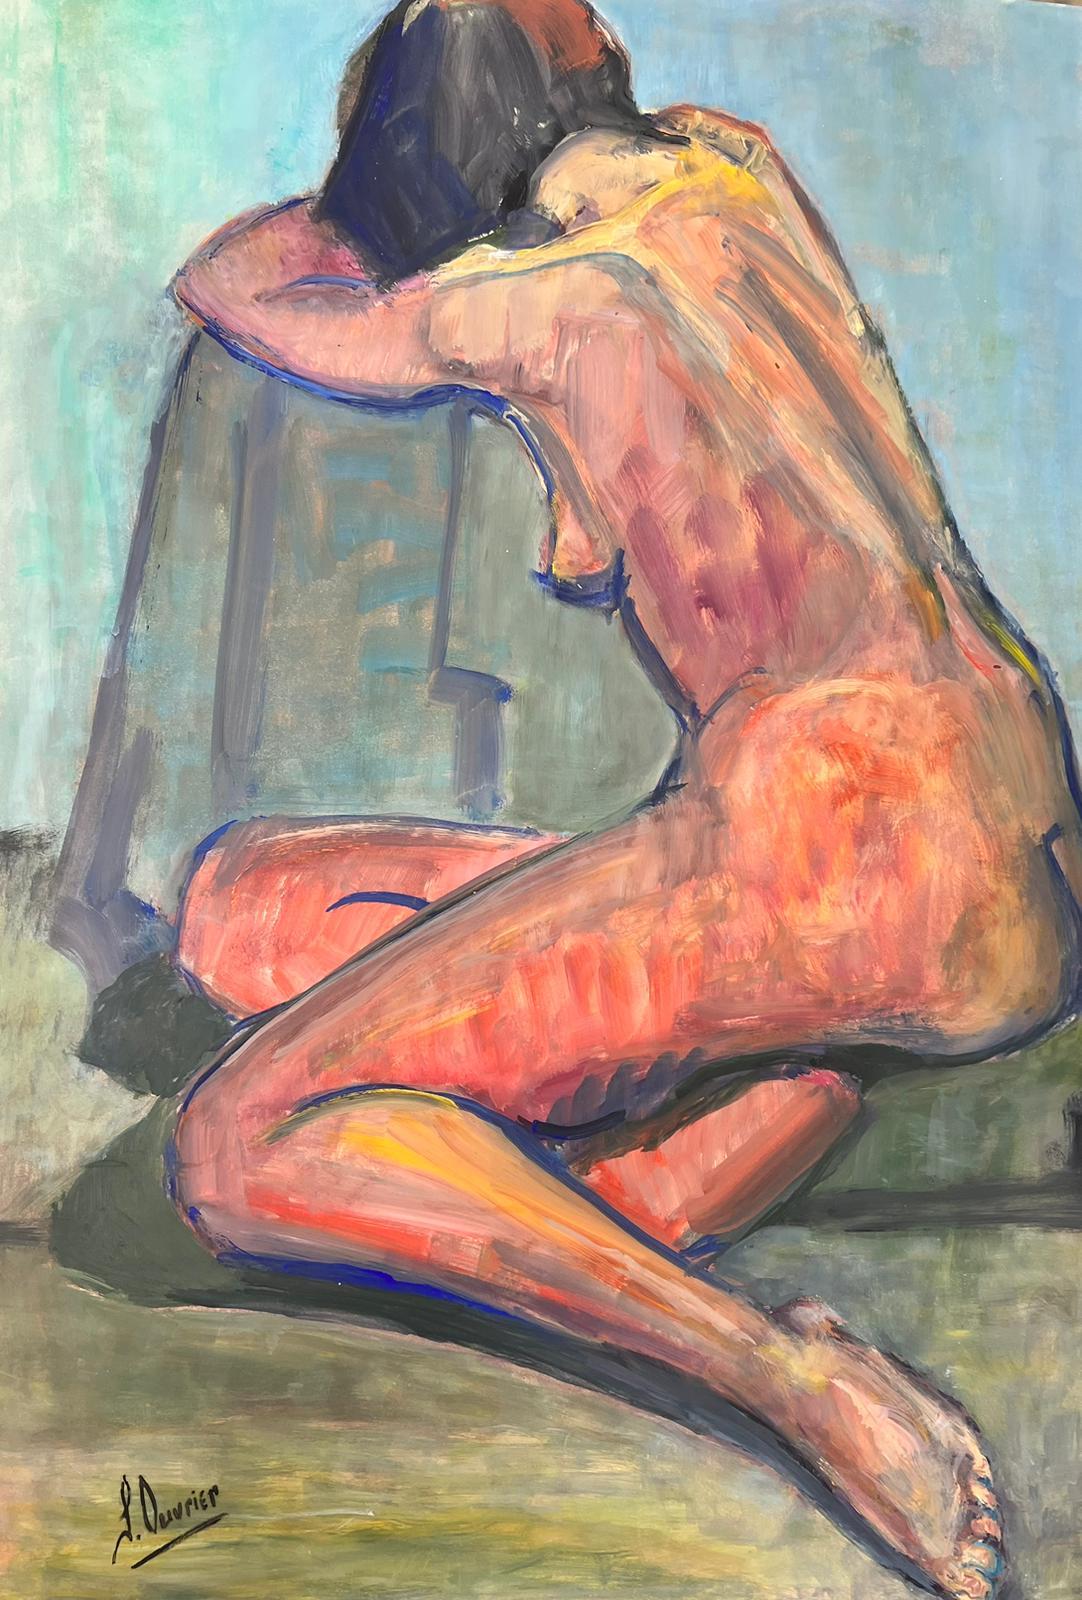 Nude Painting French Modernist - Peinture moderniste française d'une femme nue couchée des années 1970, collection Provence